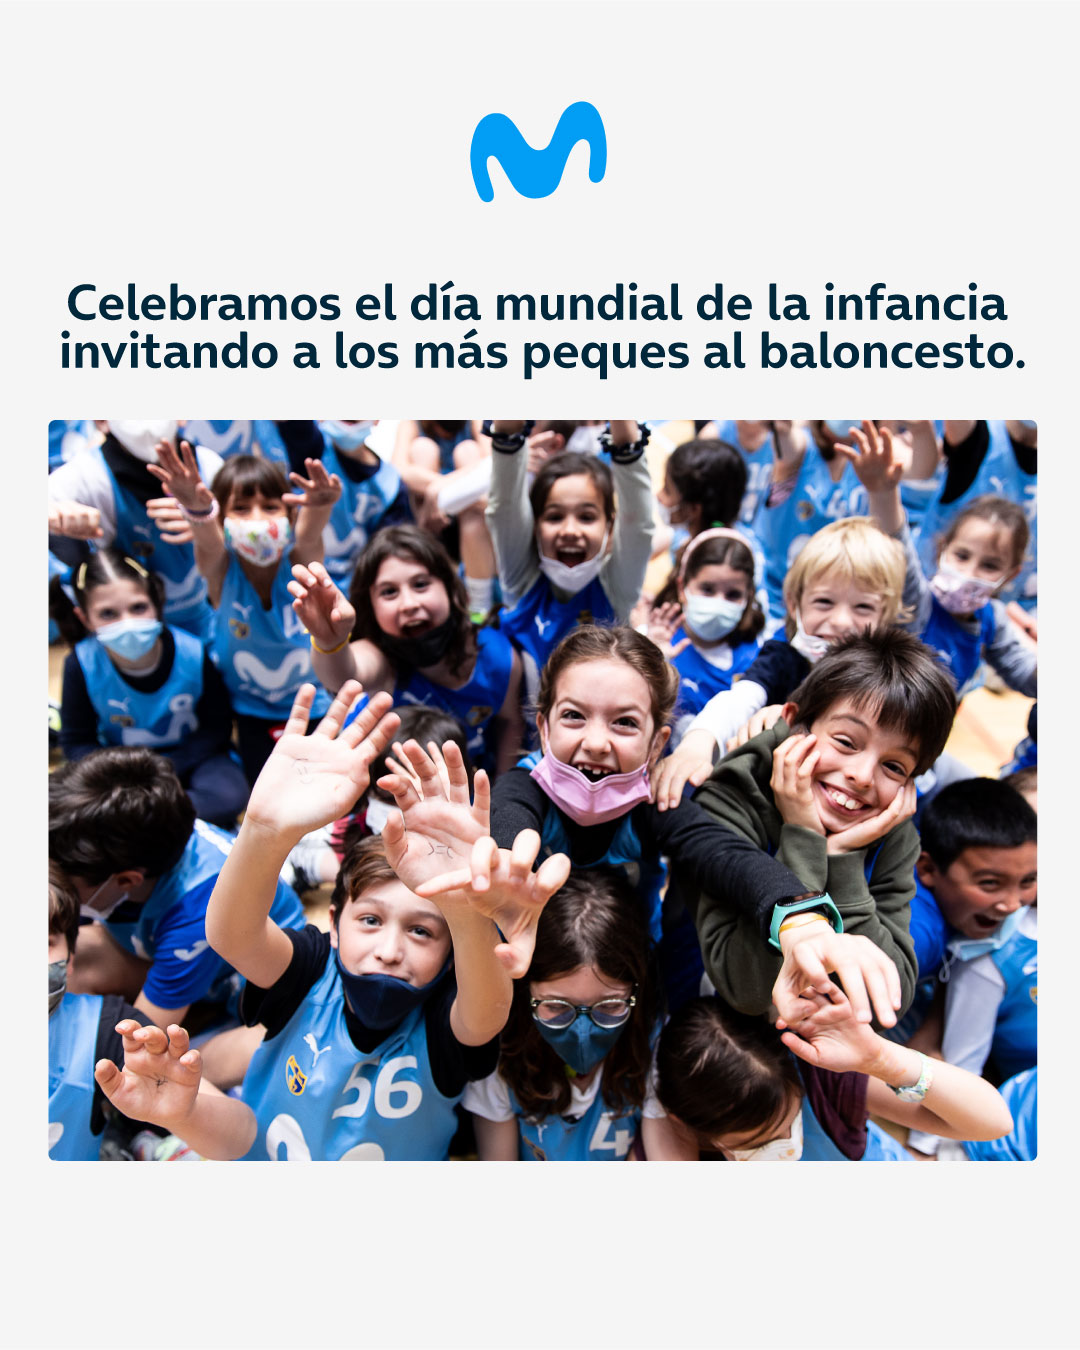 Niños/as gratis al partido por cortesía de Movistar